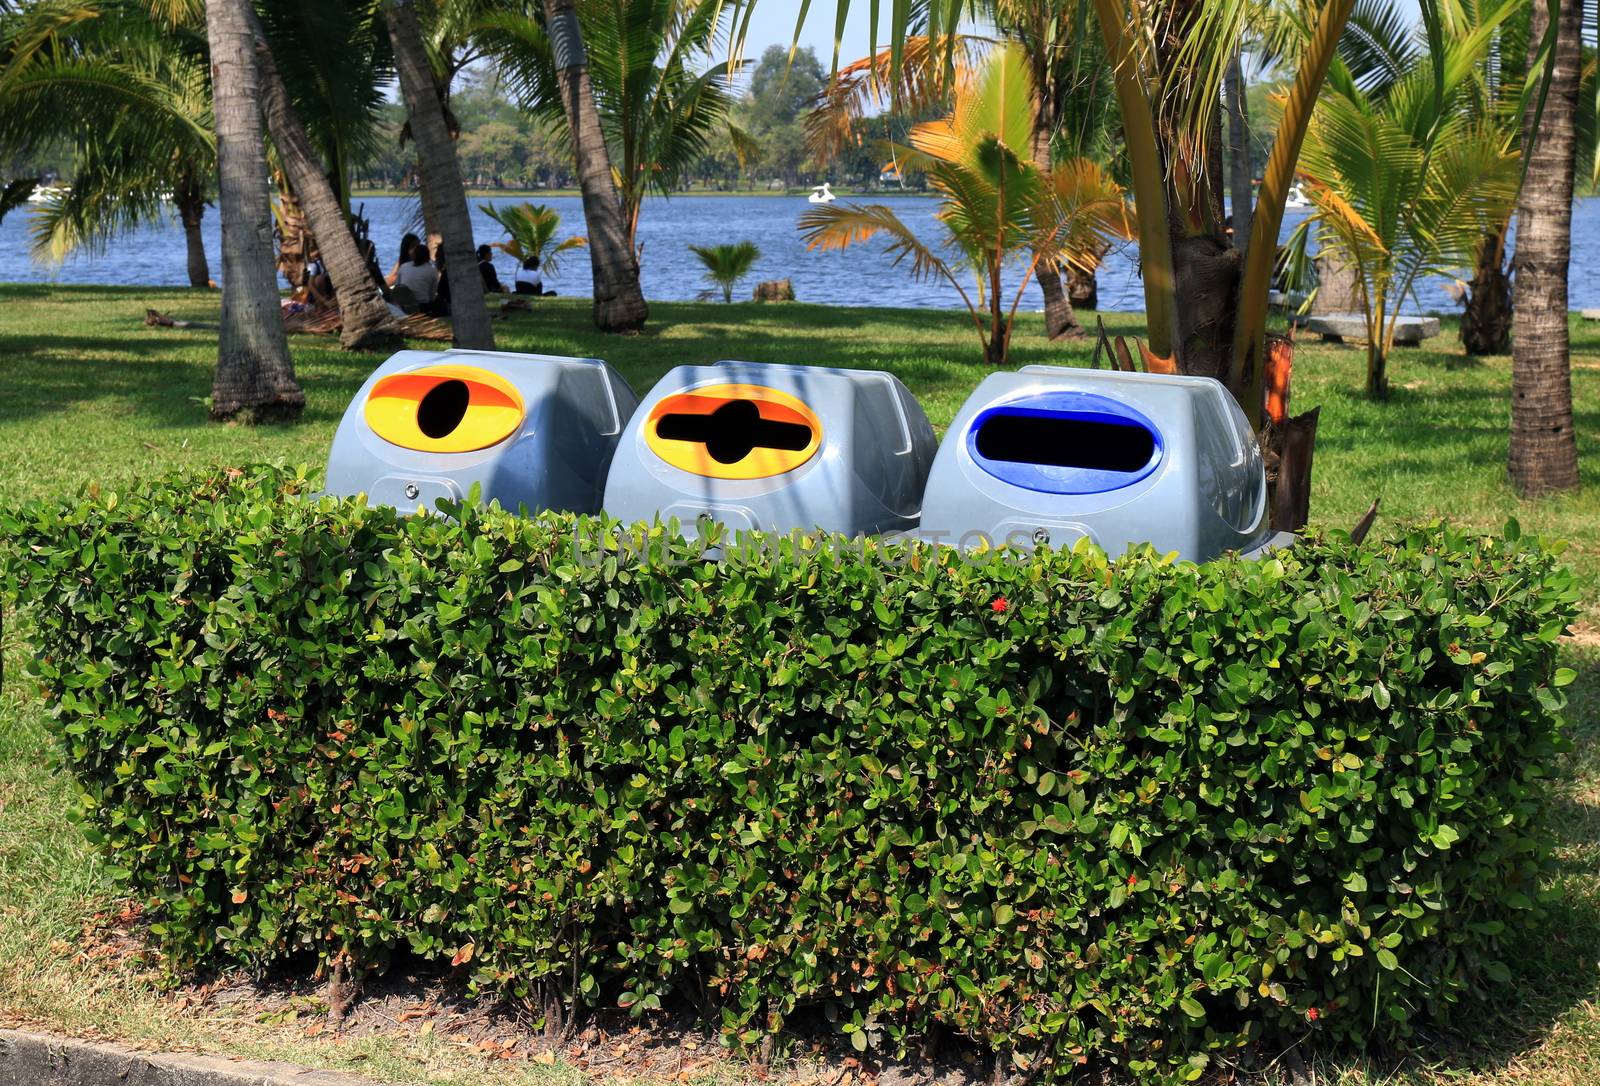 Bin, garbage bin plastic, Plastic waste bin 3 types of waste for recycle in tree wall at garden public